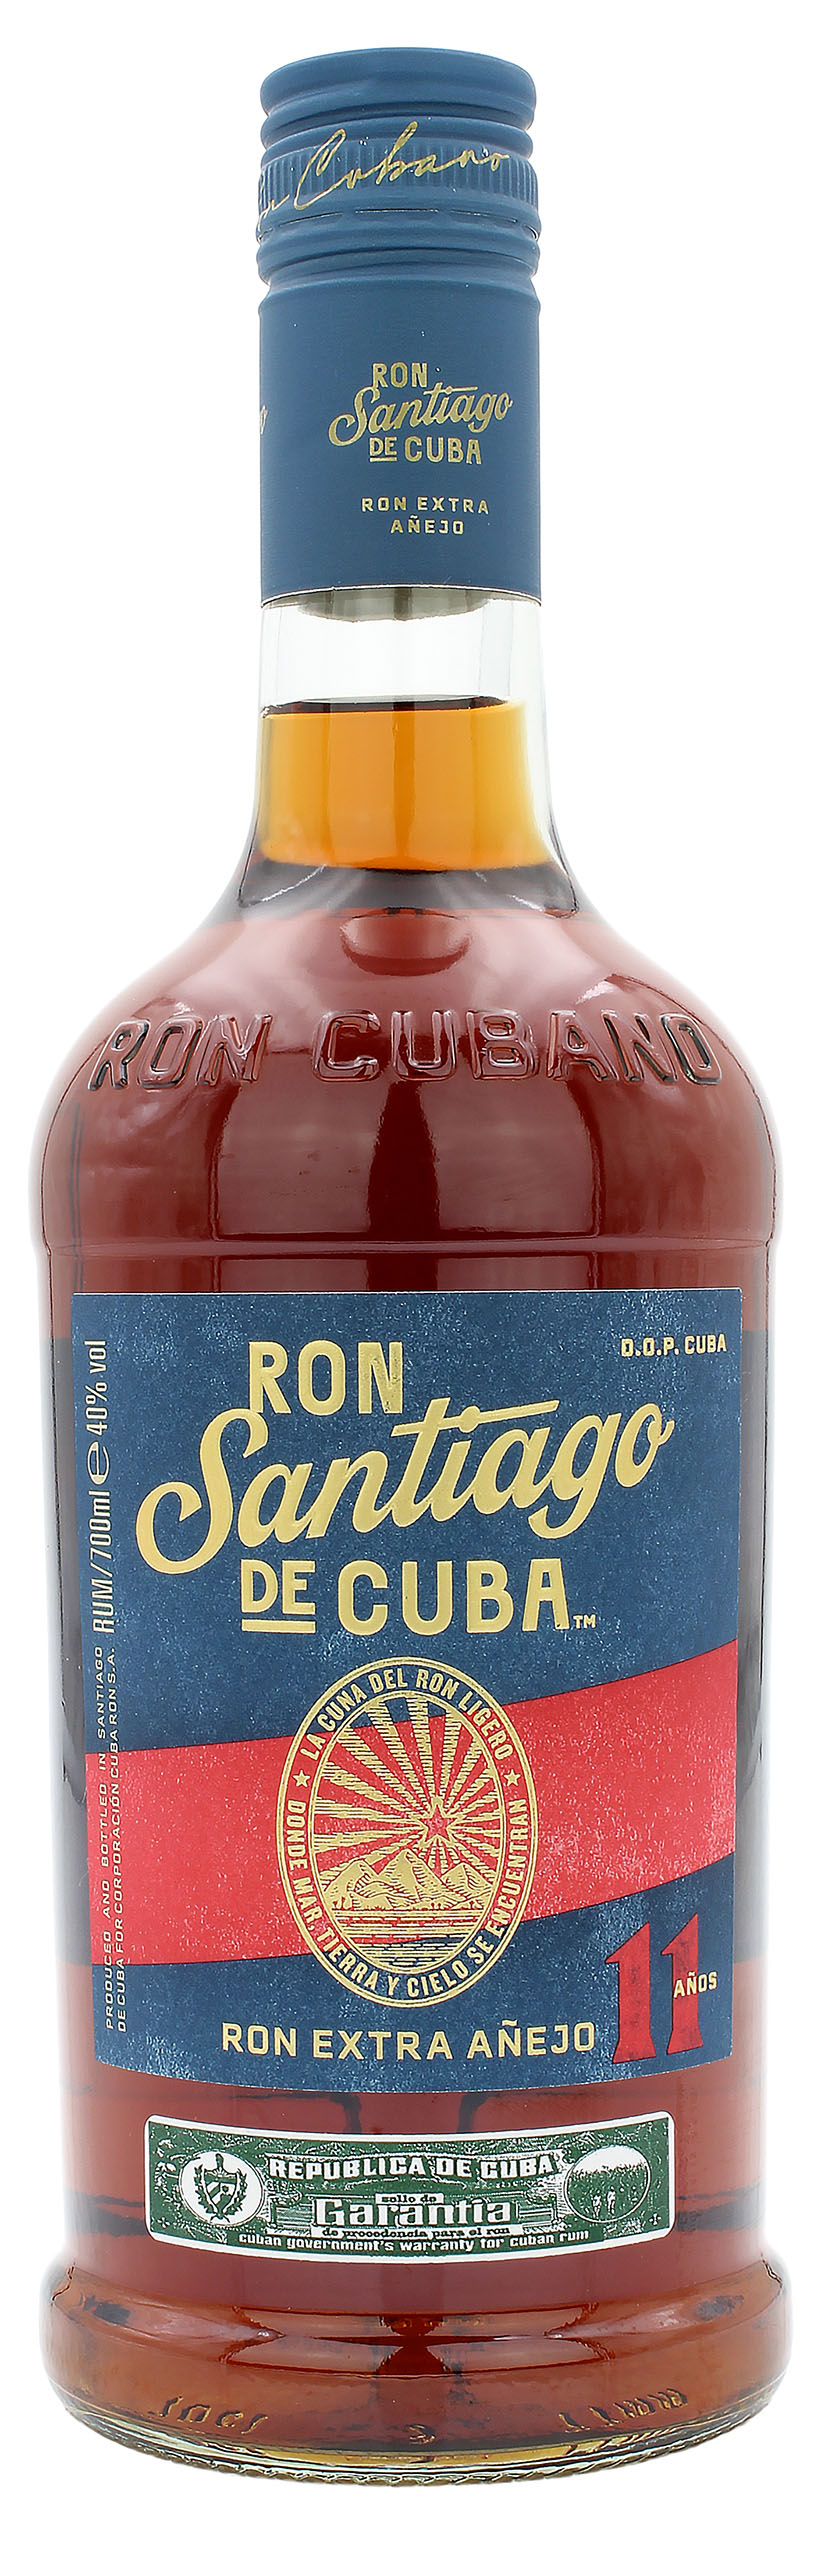 Ron Santiago de Cuba Ron Extra Anejo 11 Años 40.0% 0,7l